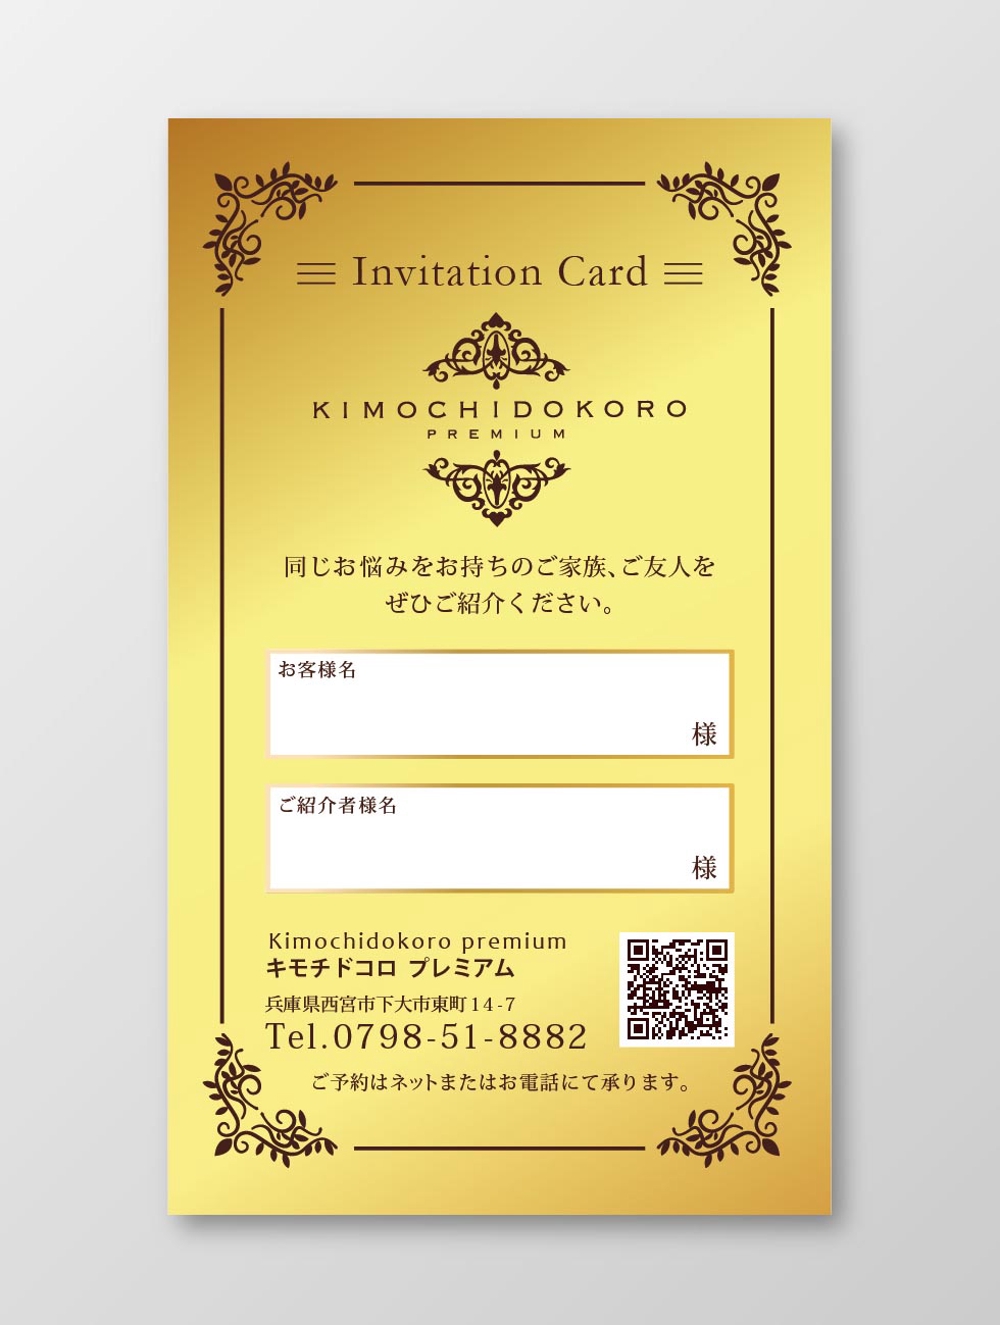 リラクゼーションサロン「kimochidokoro premium」お客様紹介カードのデザイン作成依頼